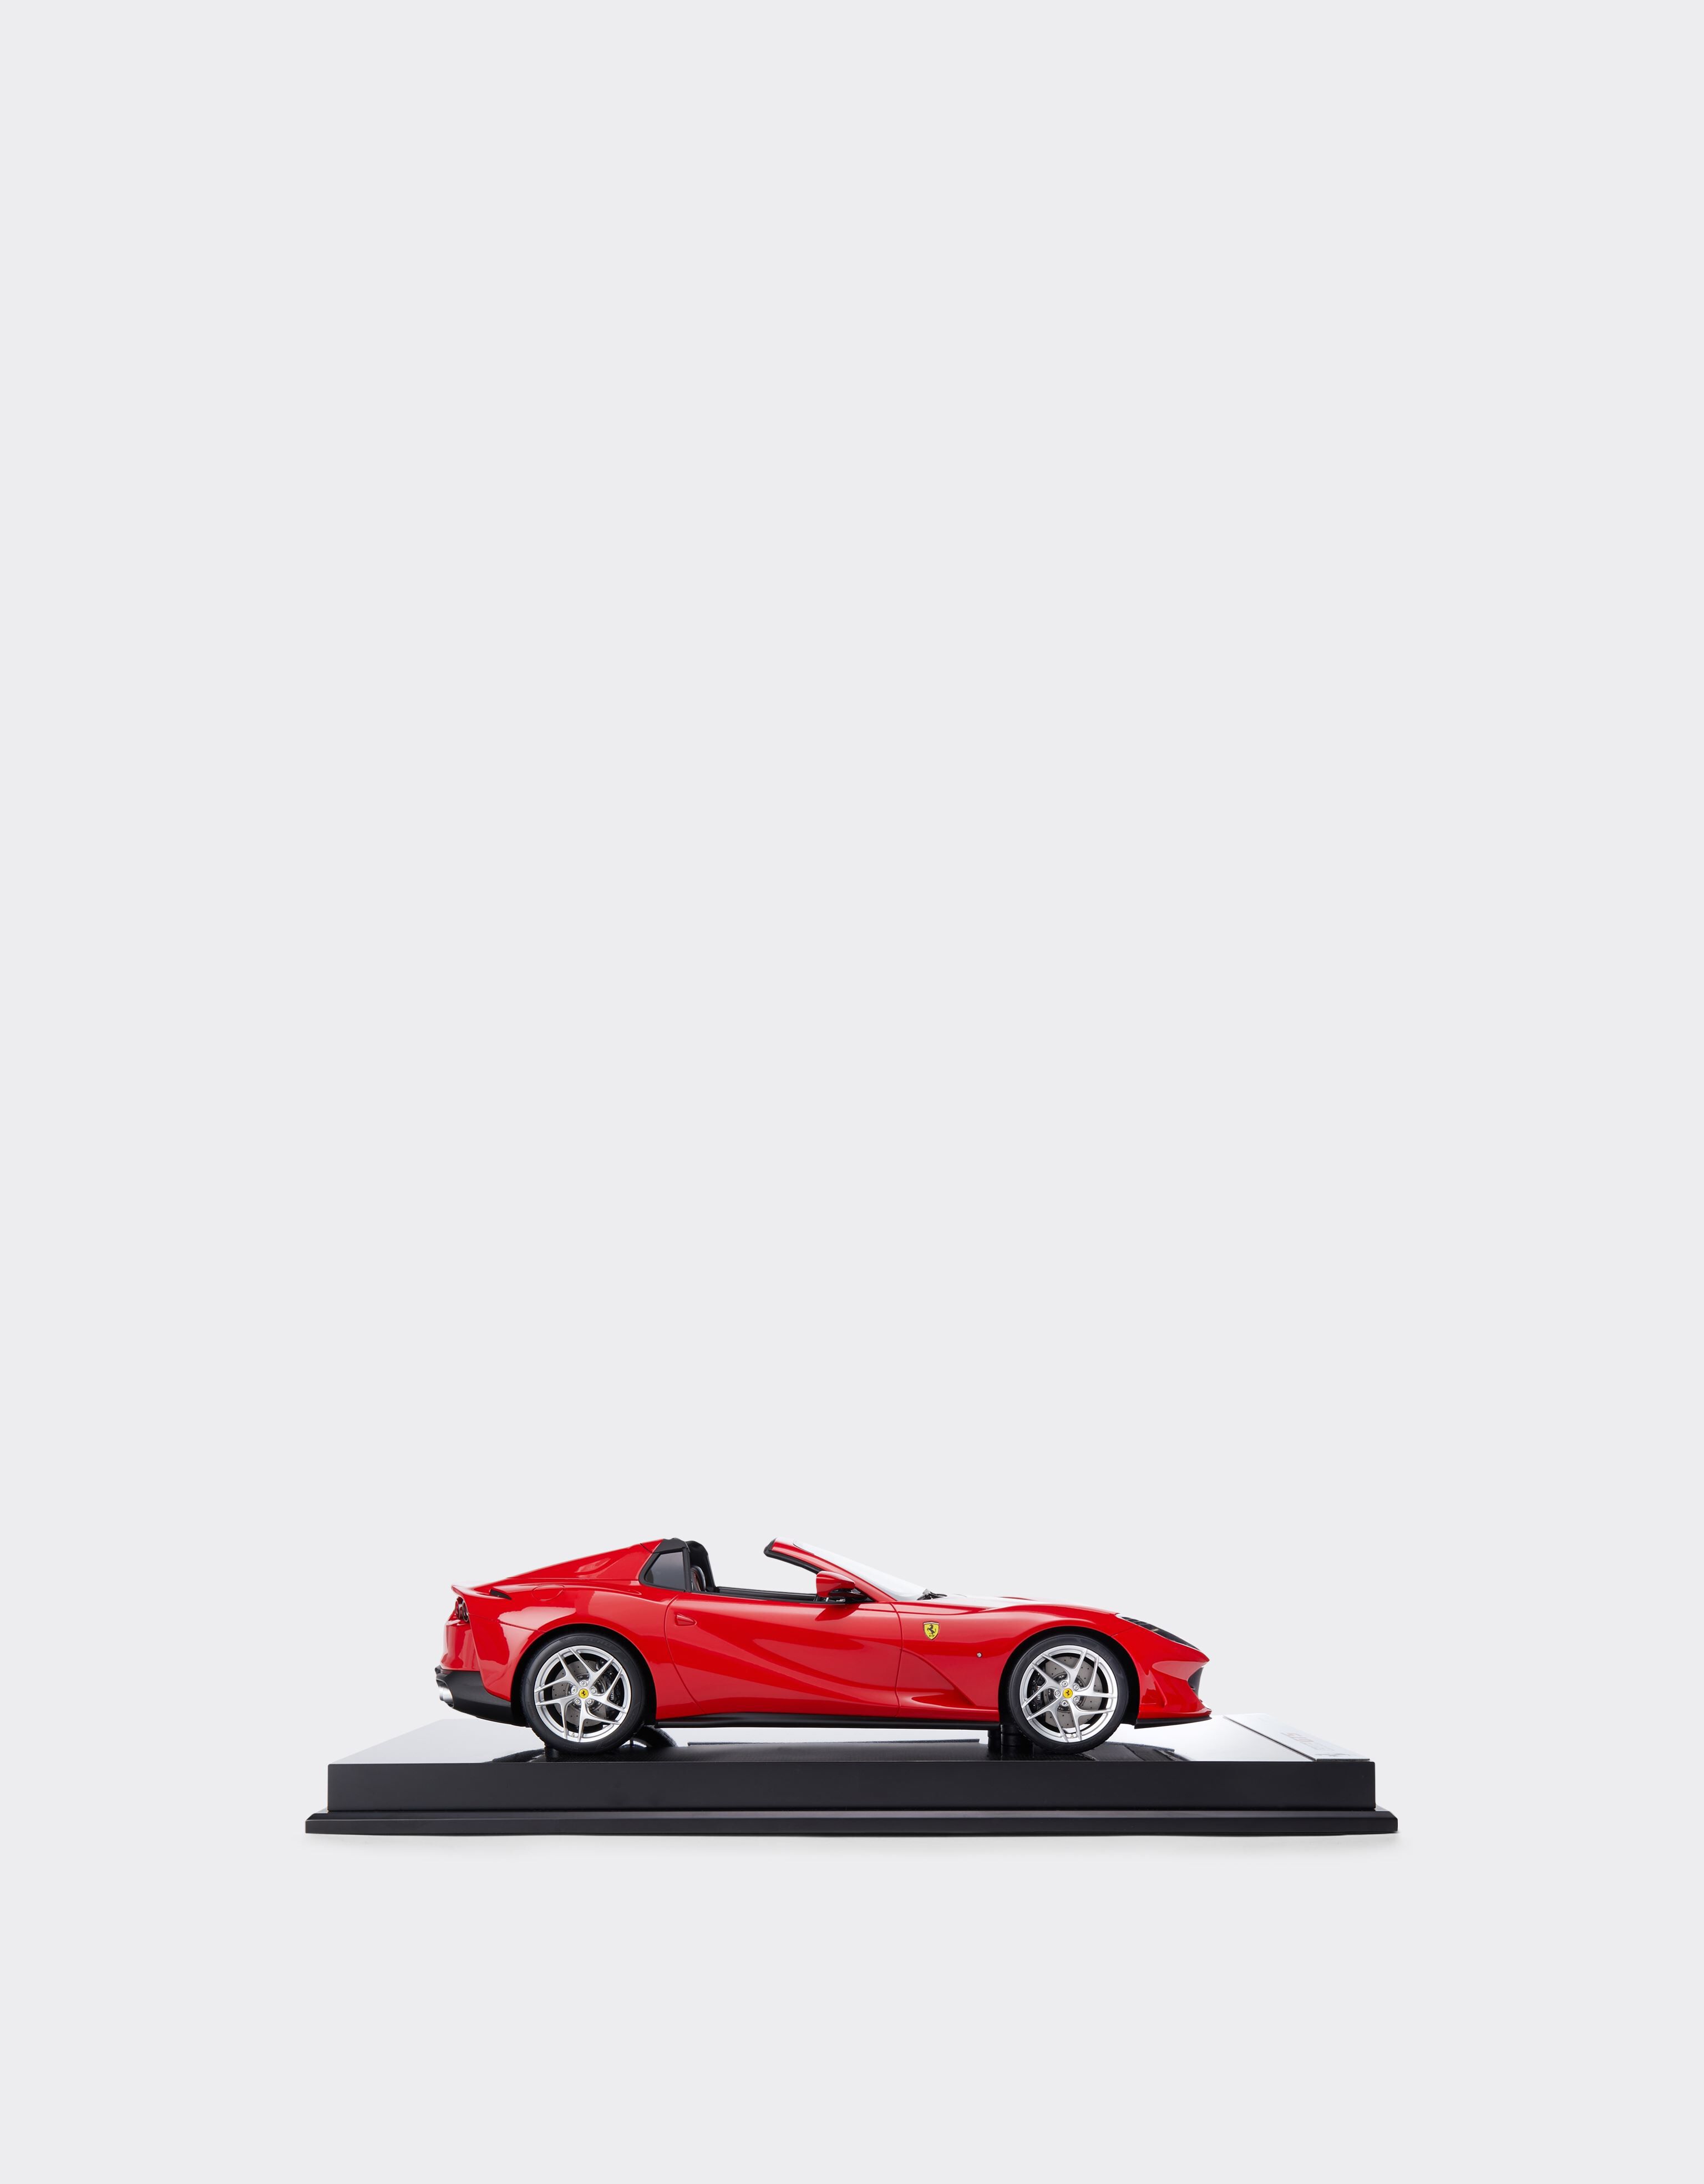 Ferrari Modelo Ferrari 812 Spider GTS a escala 1:12 Rosso Corsa F0883f